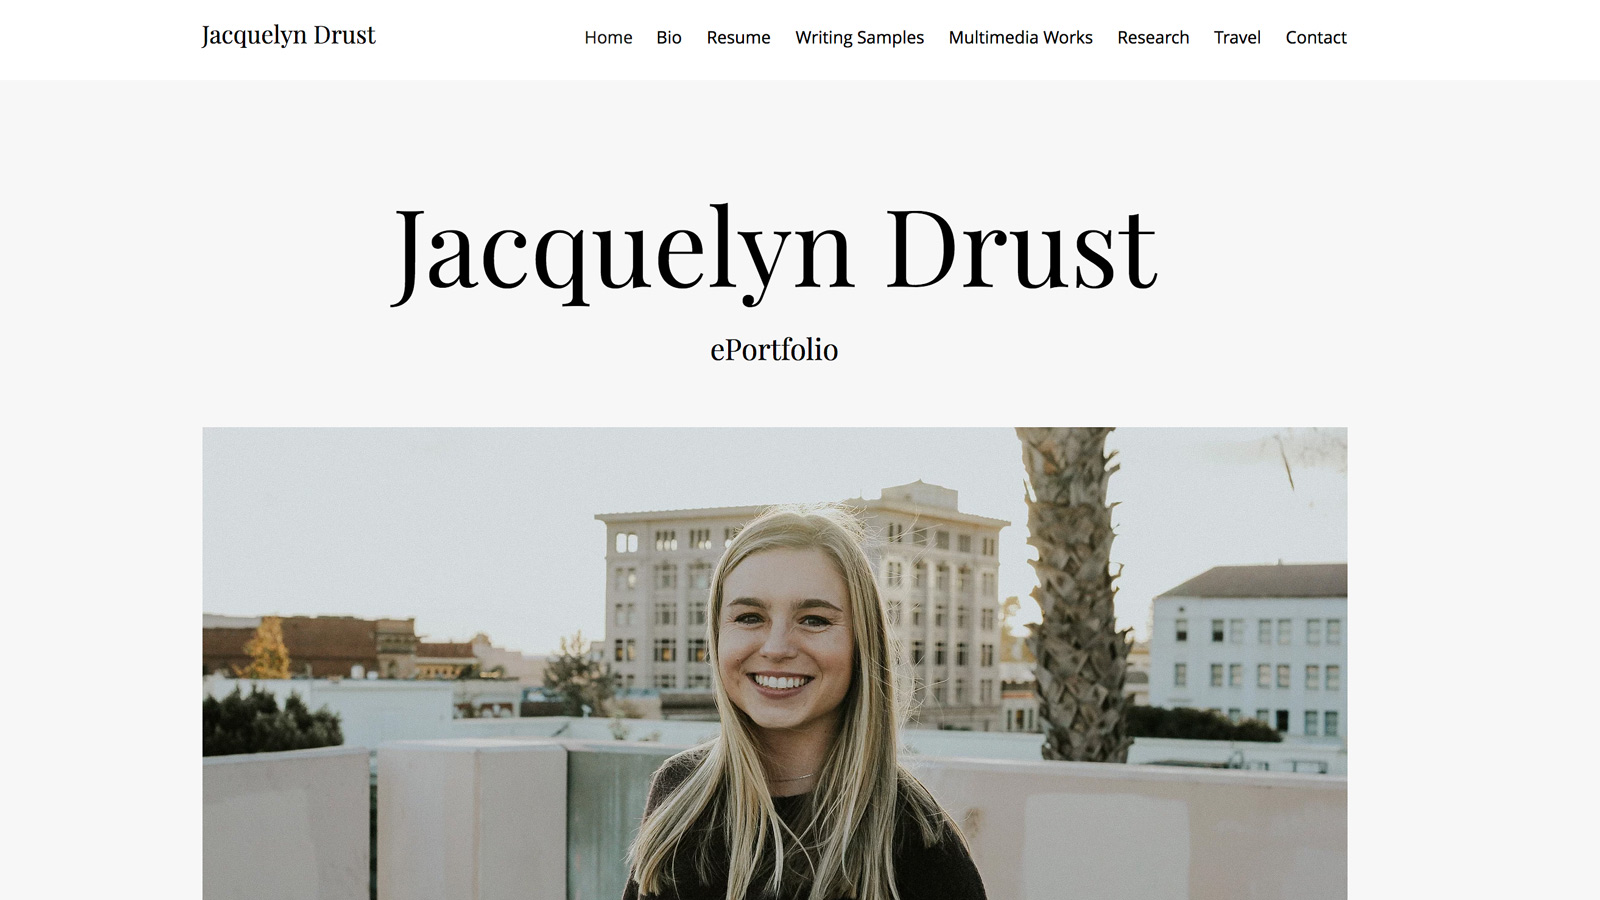 Jacquelyn Drust